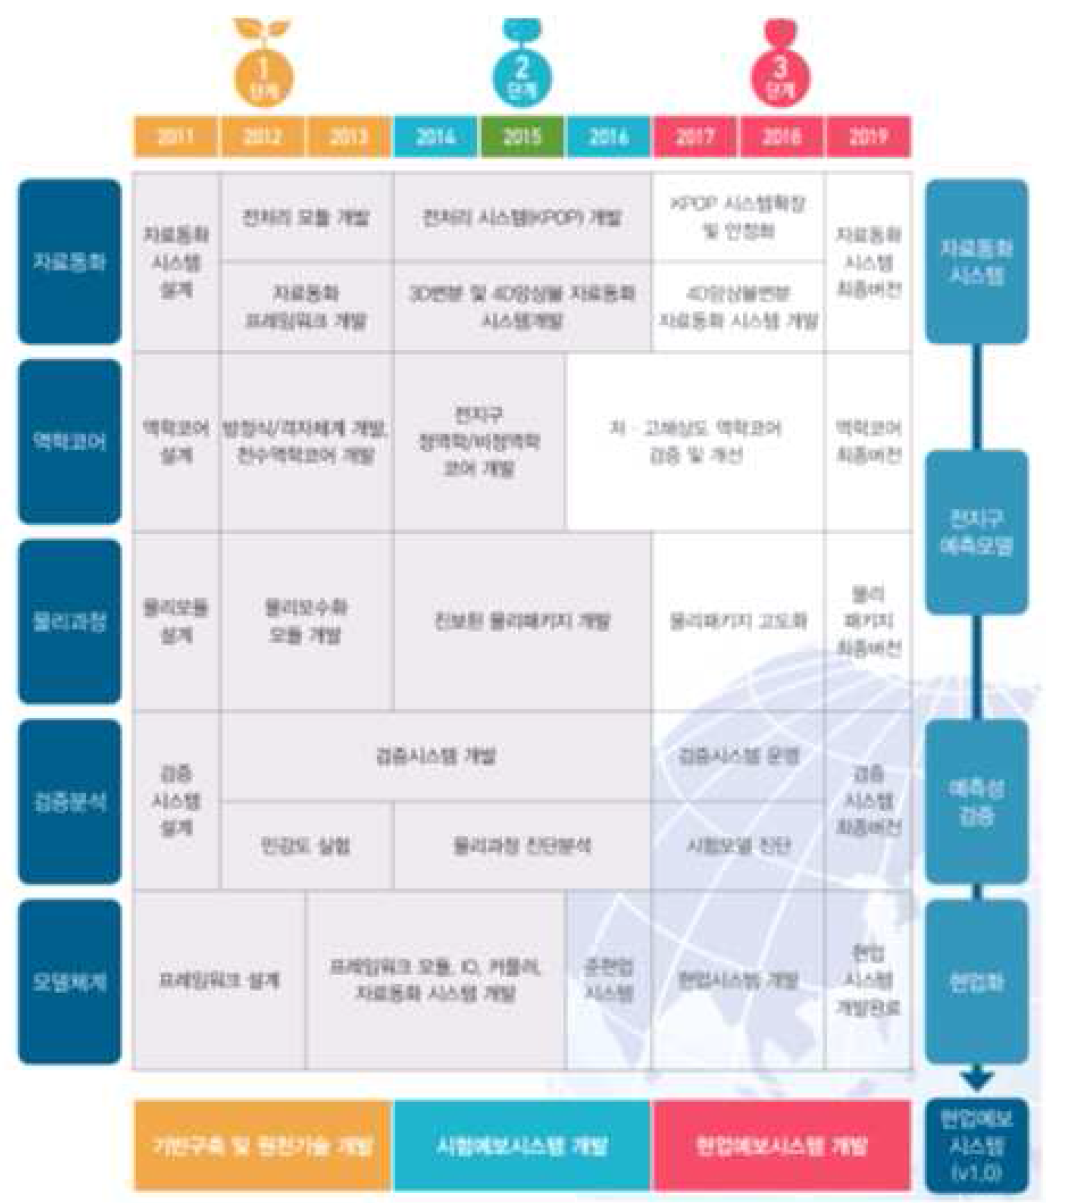 한국형 기상 수치예보 모델 개발 단계별 연구 내용